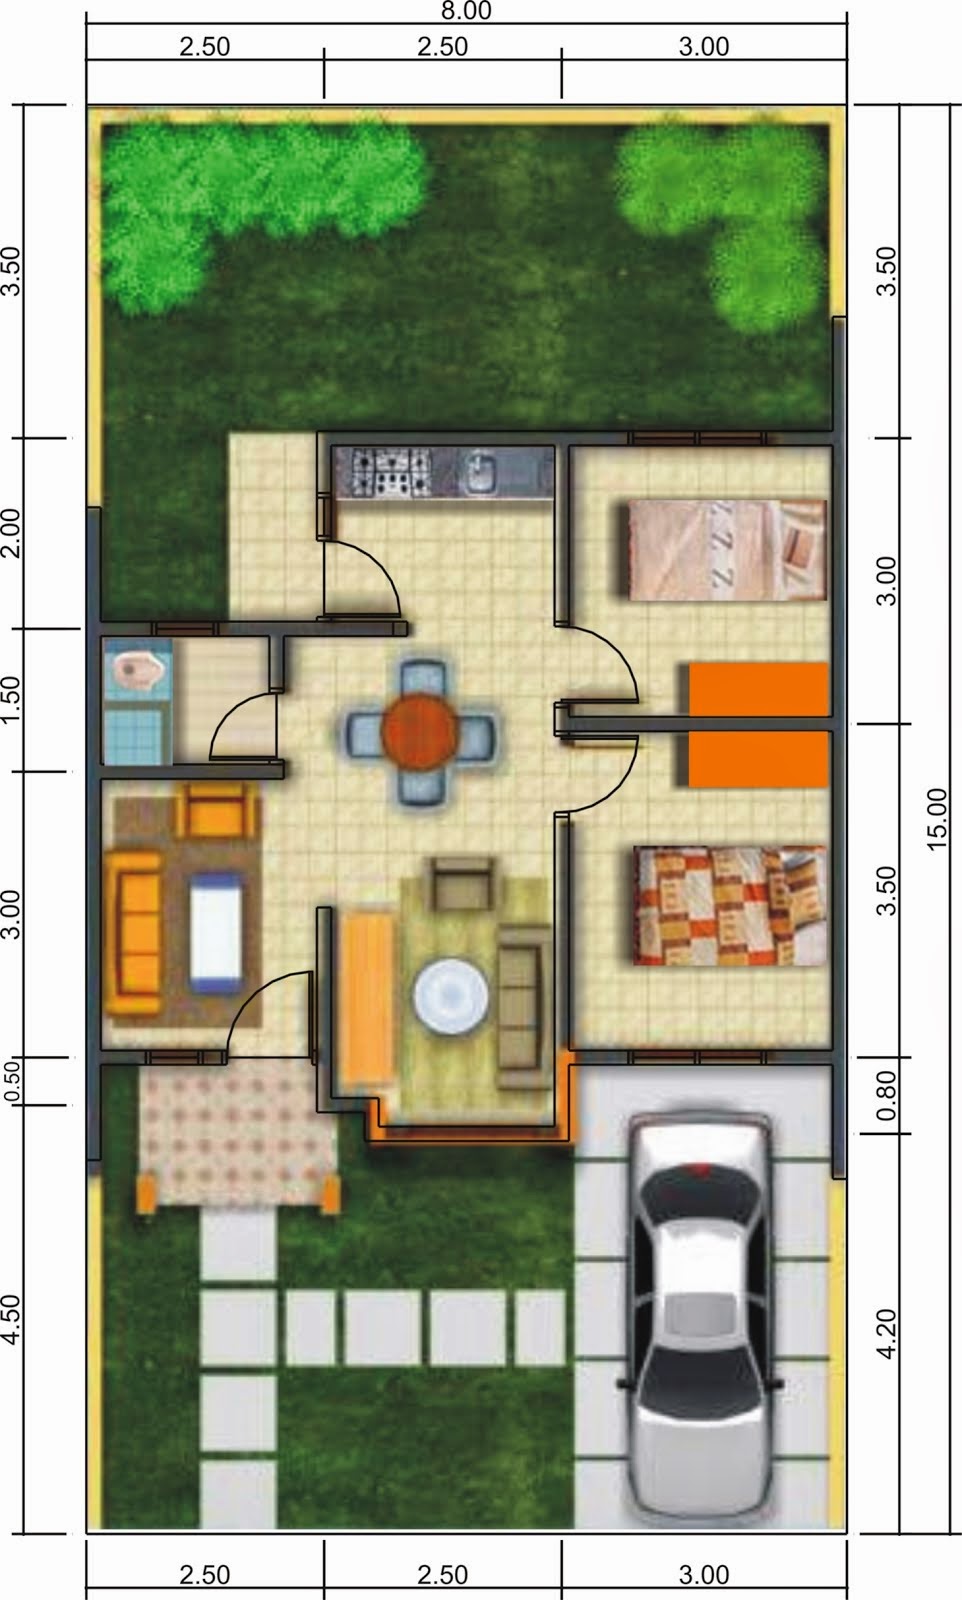  Denah  Rumah  Minimalis  1 Lantai Ukuran 8x10 Desain Rumah  